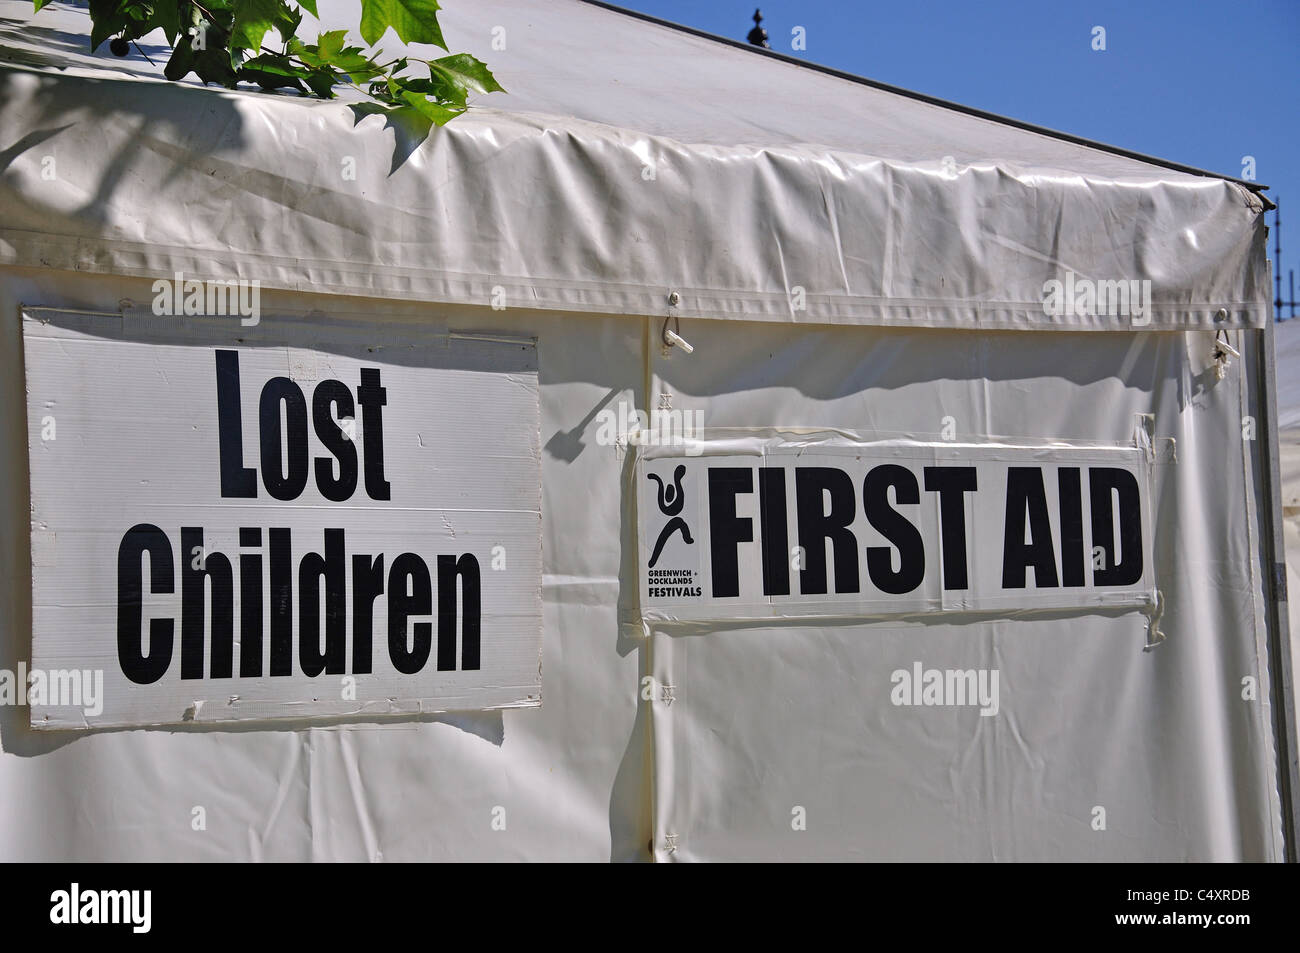 Primo soccorso e perso i bambini segni sulla tenda festival, Greenwich, Borough of Greenwich, Greater London, England, Regno Unito Foto Stock